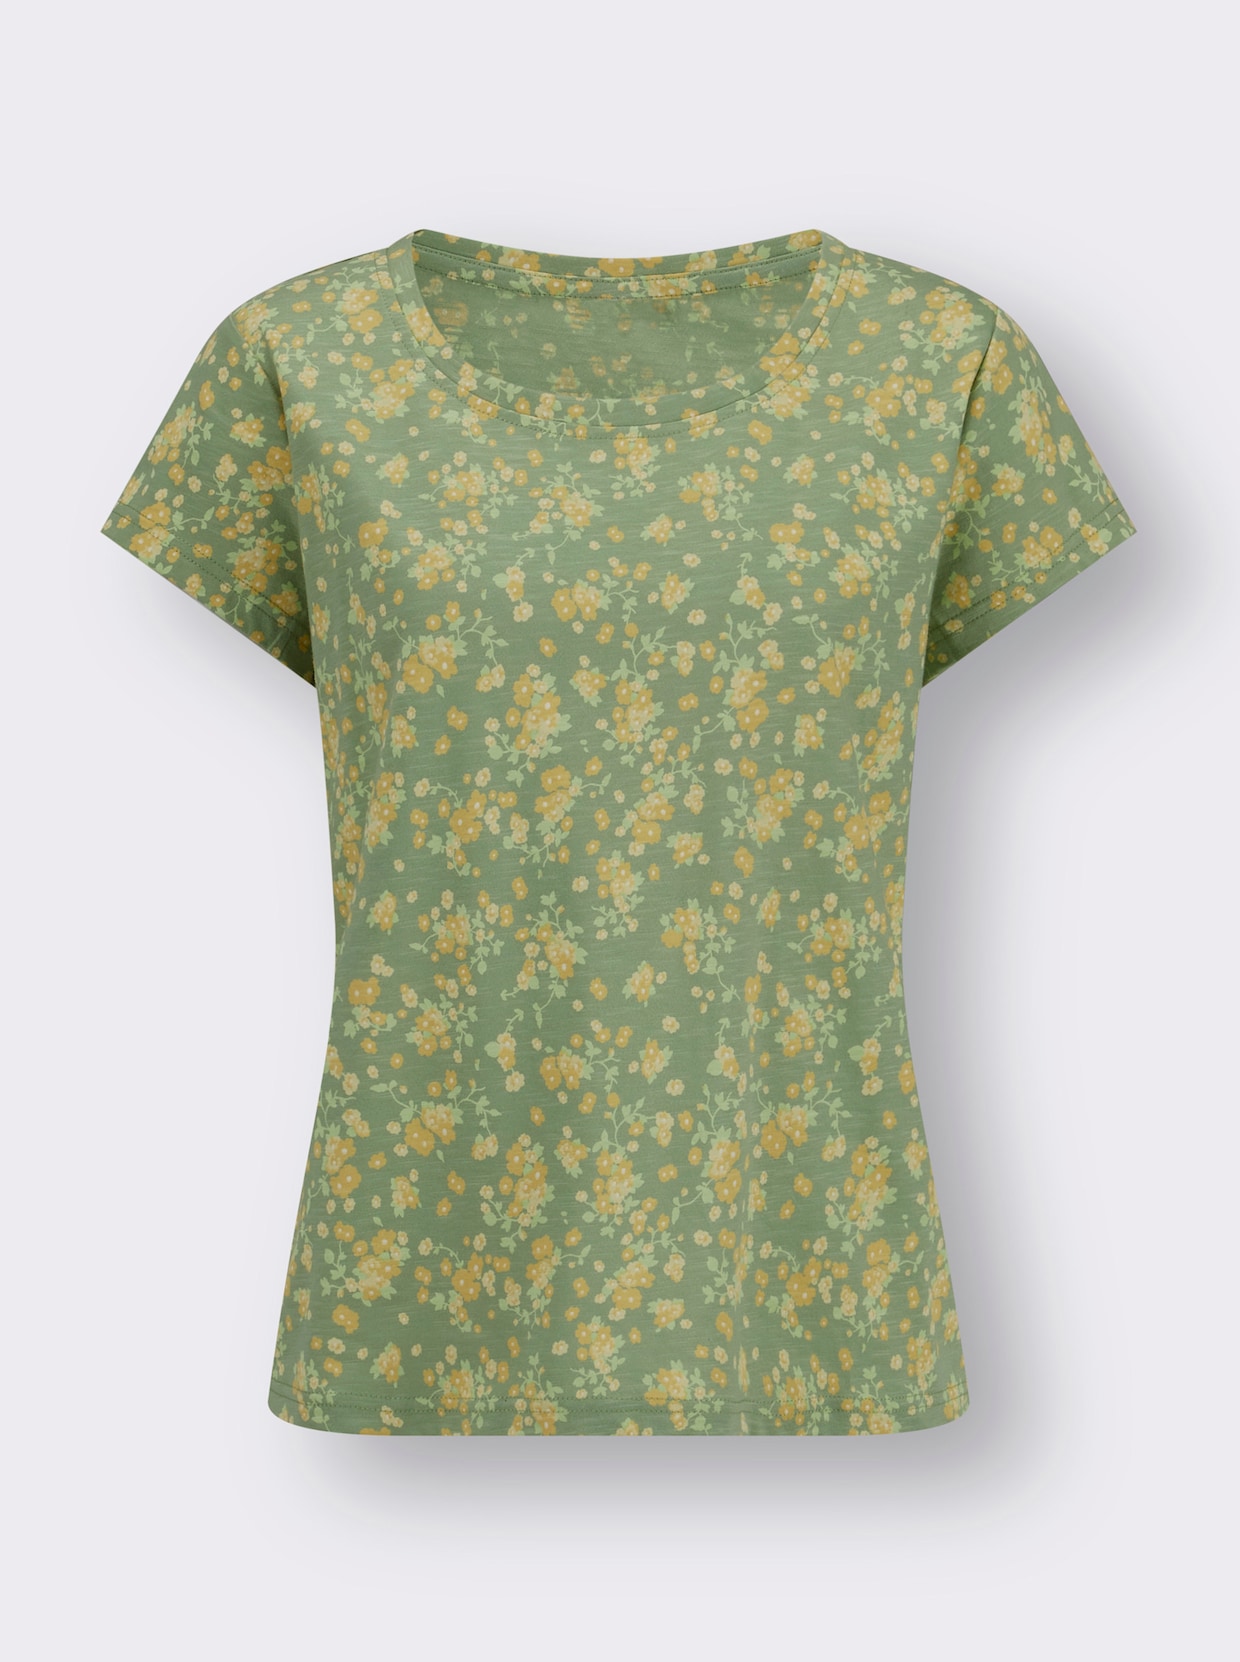 Bedrukt shirt - eucalyptus/citroen bedrukt